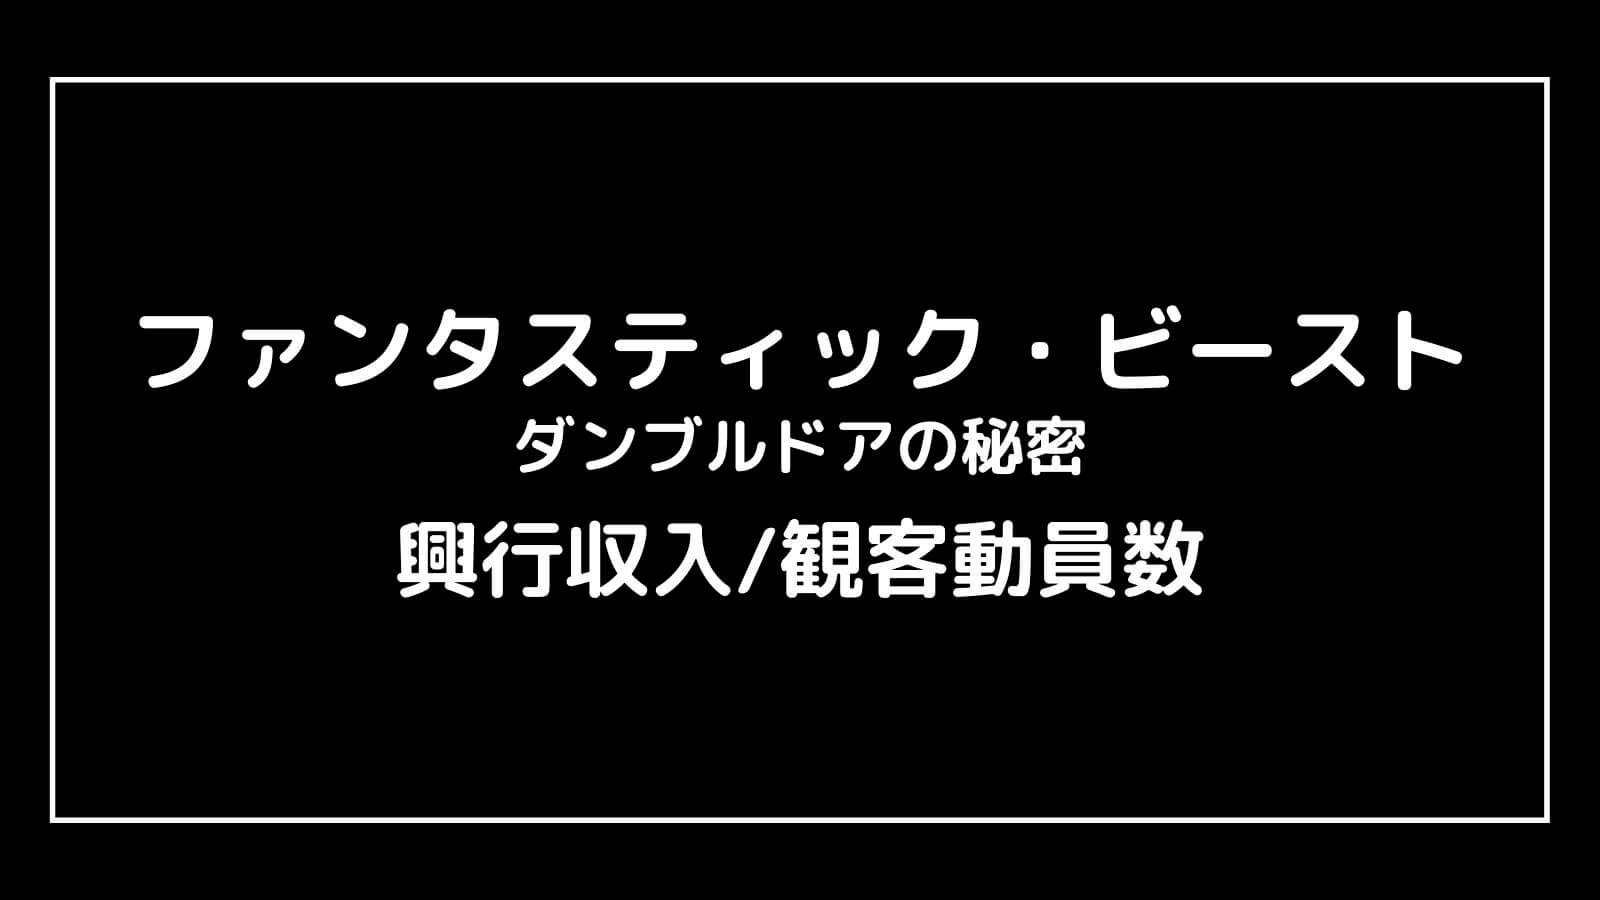 『ファンタスティック・ビースト3 ダンブルドアの秘密』日本の興行収入推移と最終興収を元映画館社員が予想